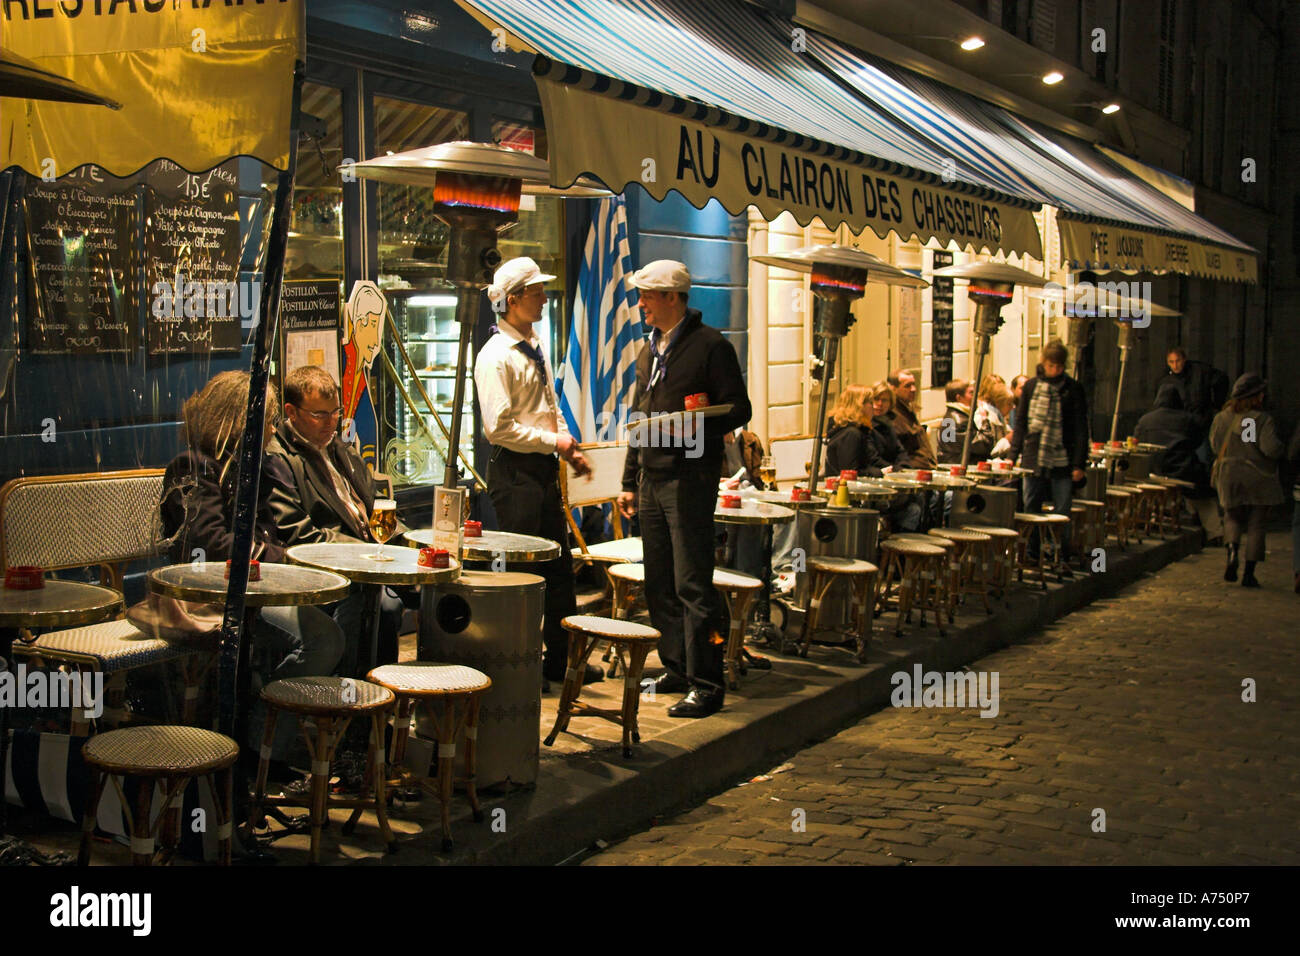 Café Au Clairon des Chasseurs am Place du Tertre Montmartre Paris France Stockfoto